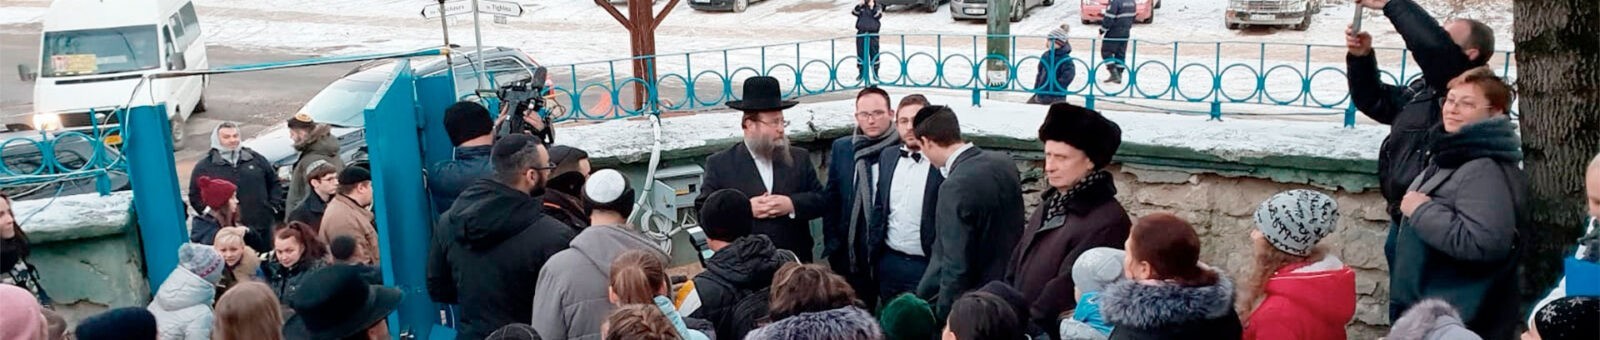 Еврейская религиозная община Молдовы. Главная Синагога в Кишинёве